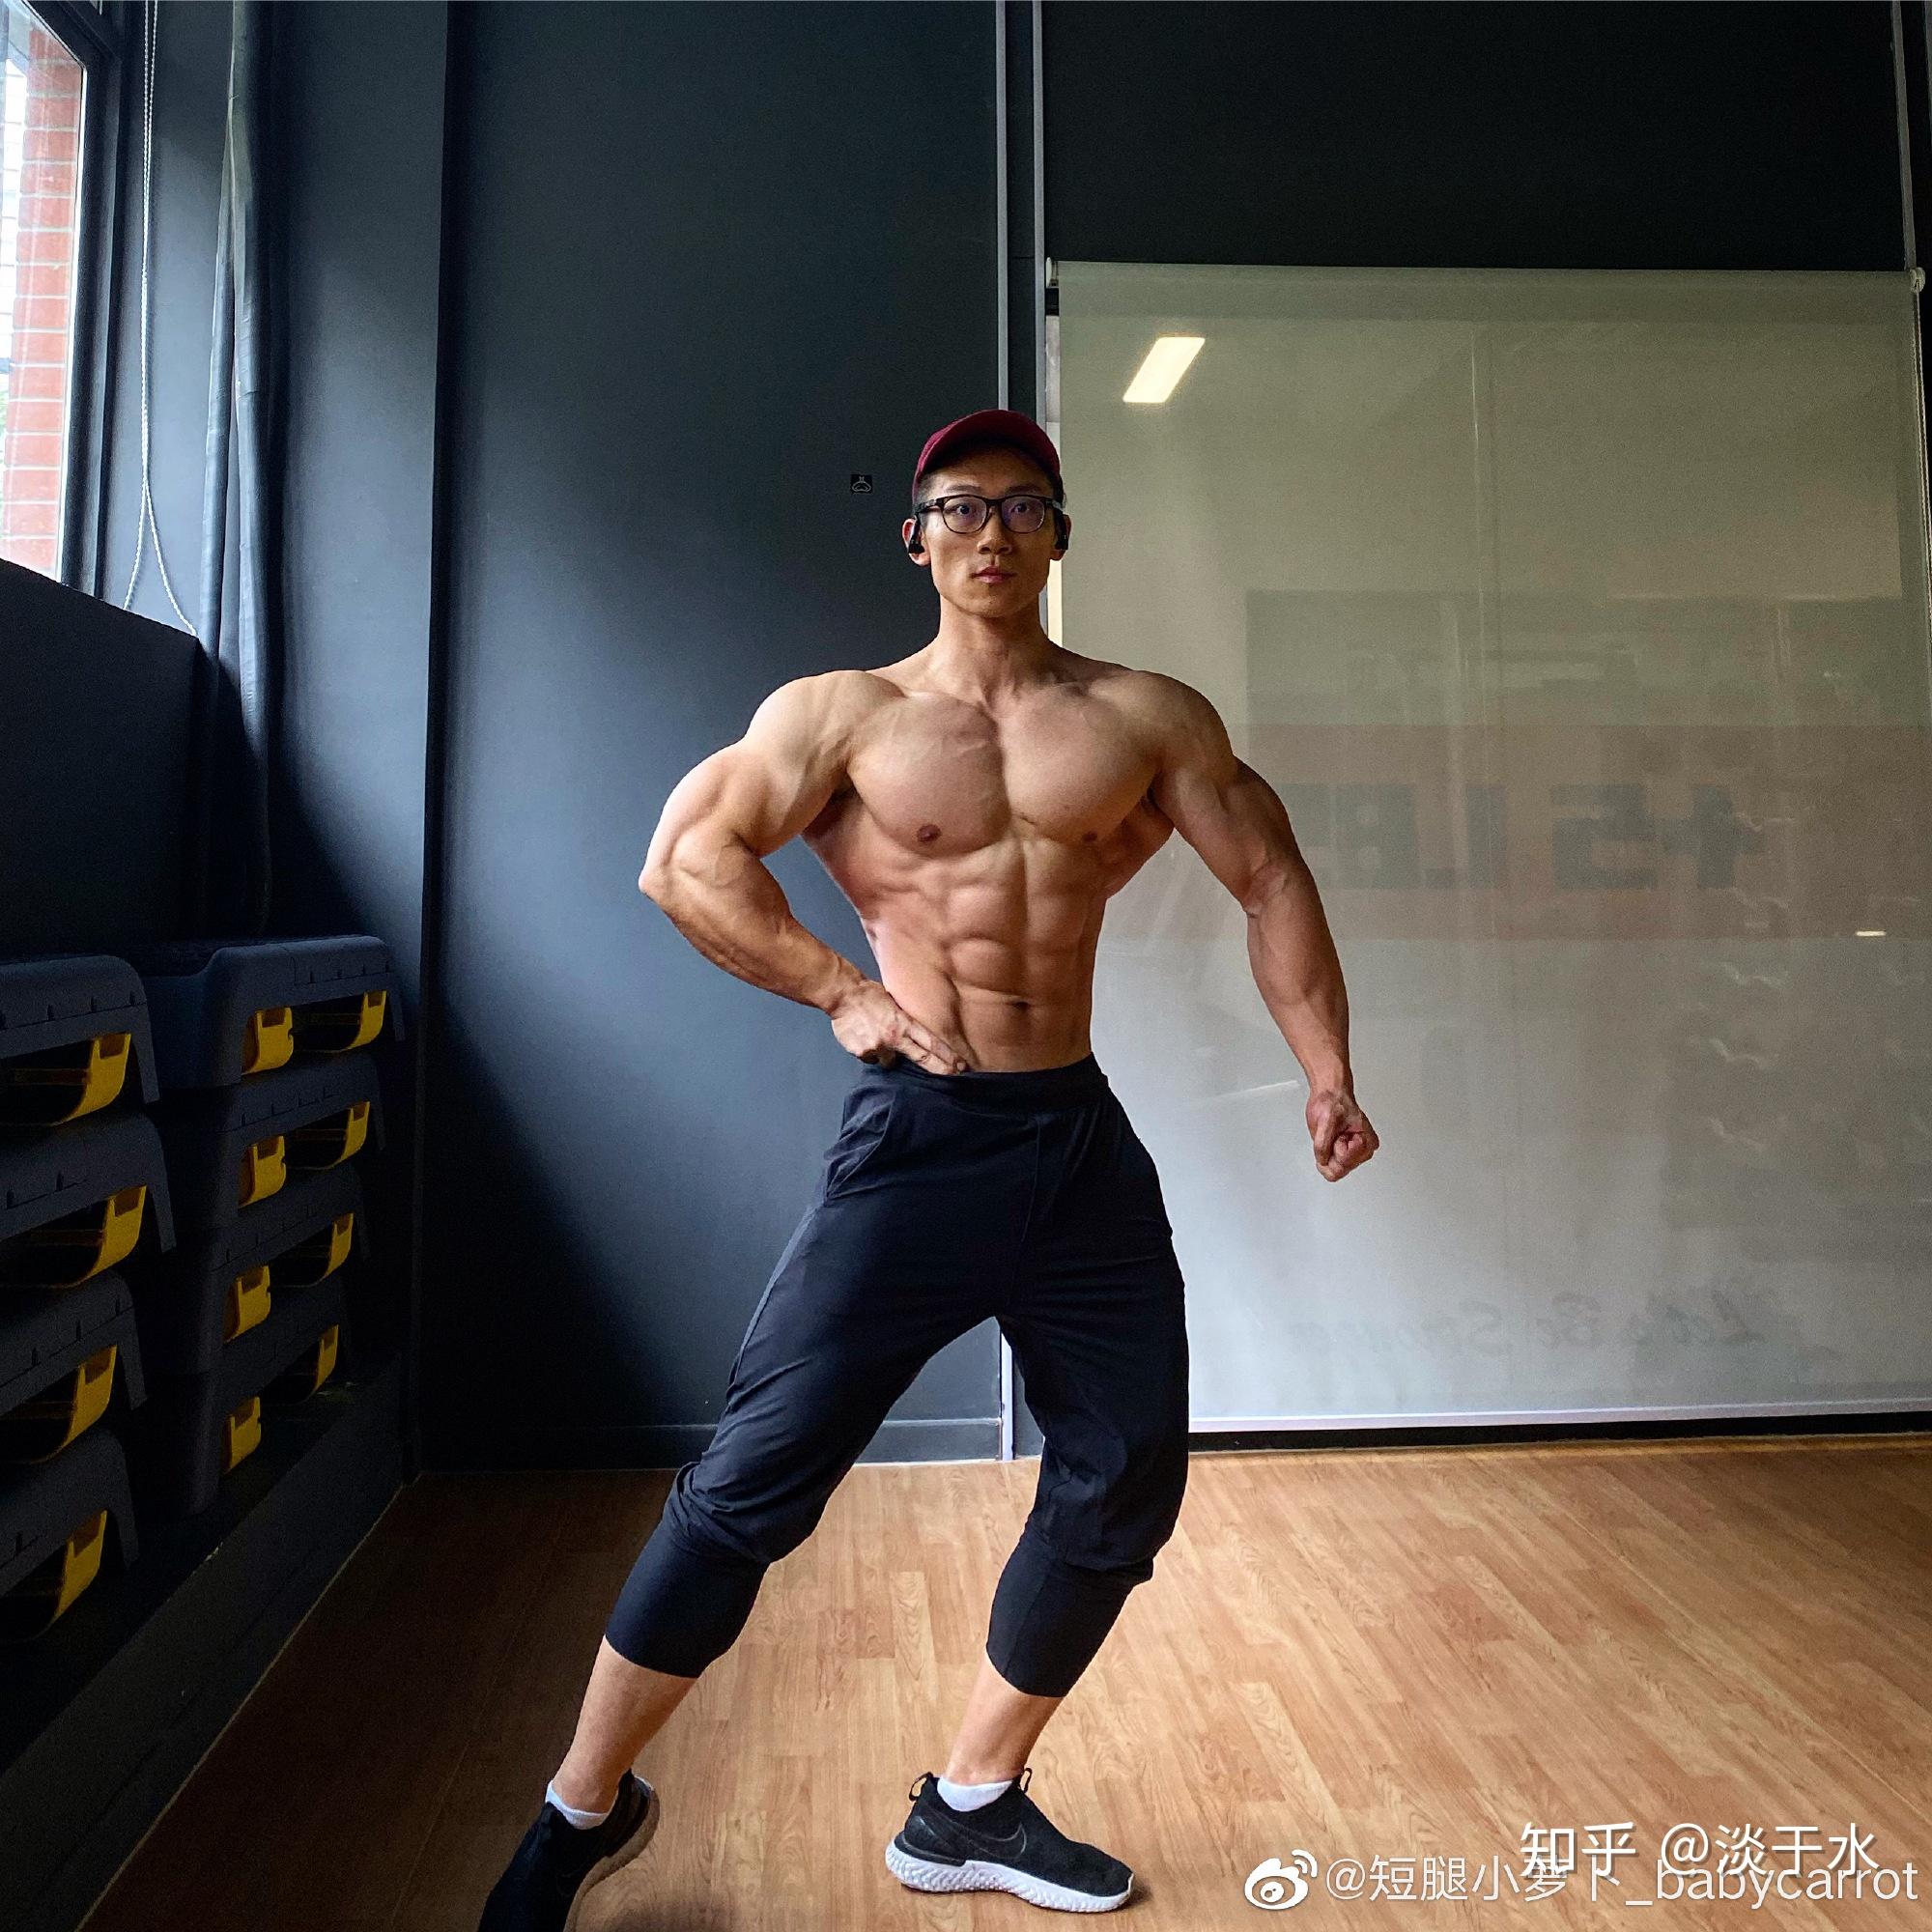 28岁越南头号肌肉网红，大粗腿实力超群 - 男性 - 酷泡时尚 - 中国时尚资讯综合门户